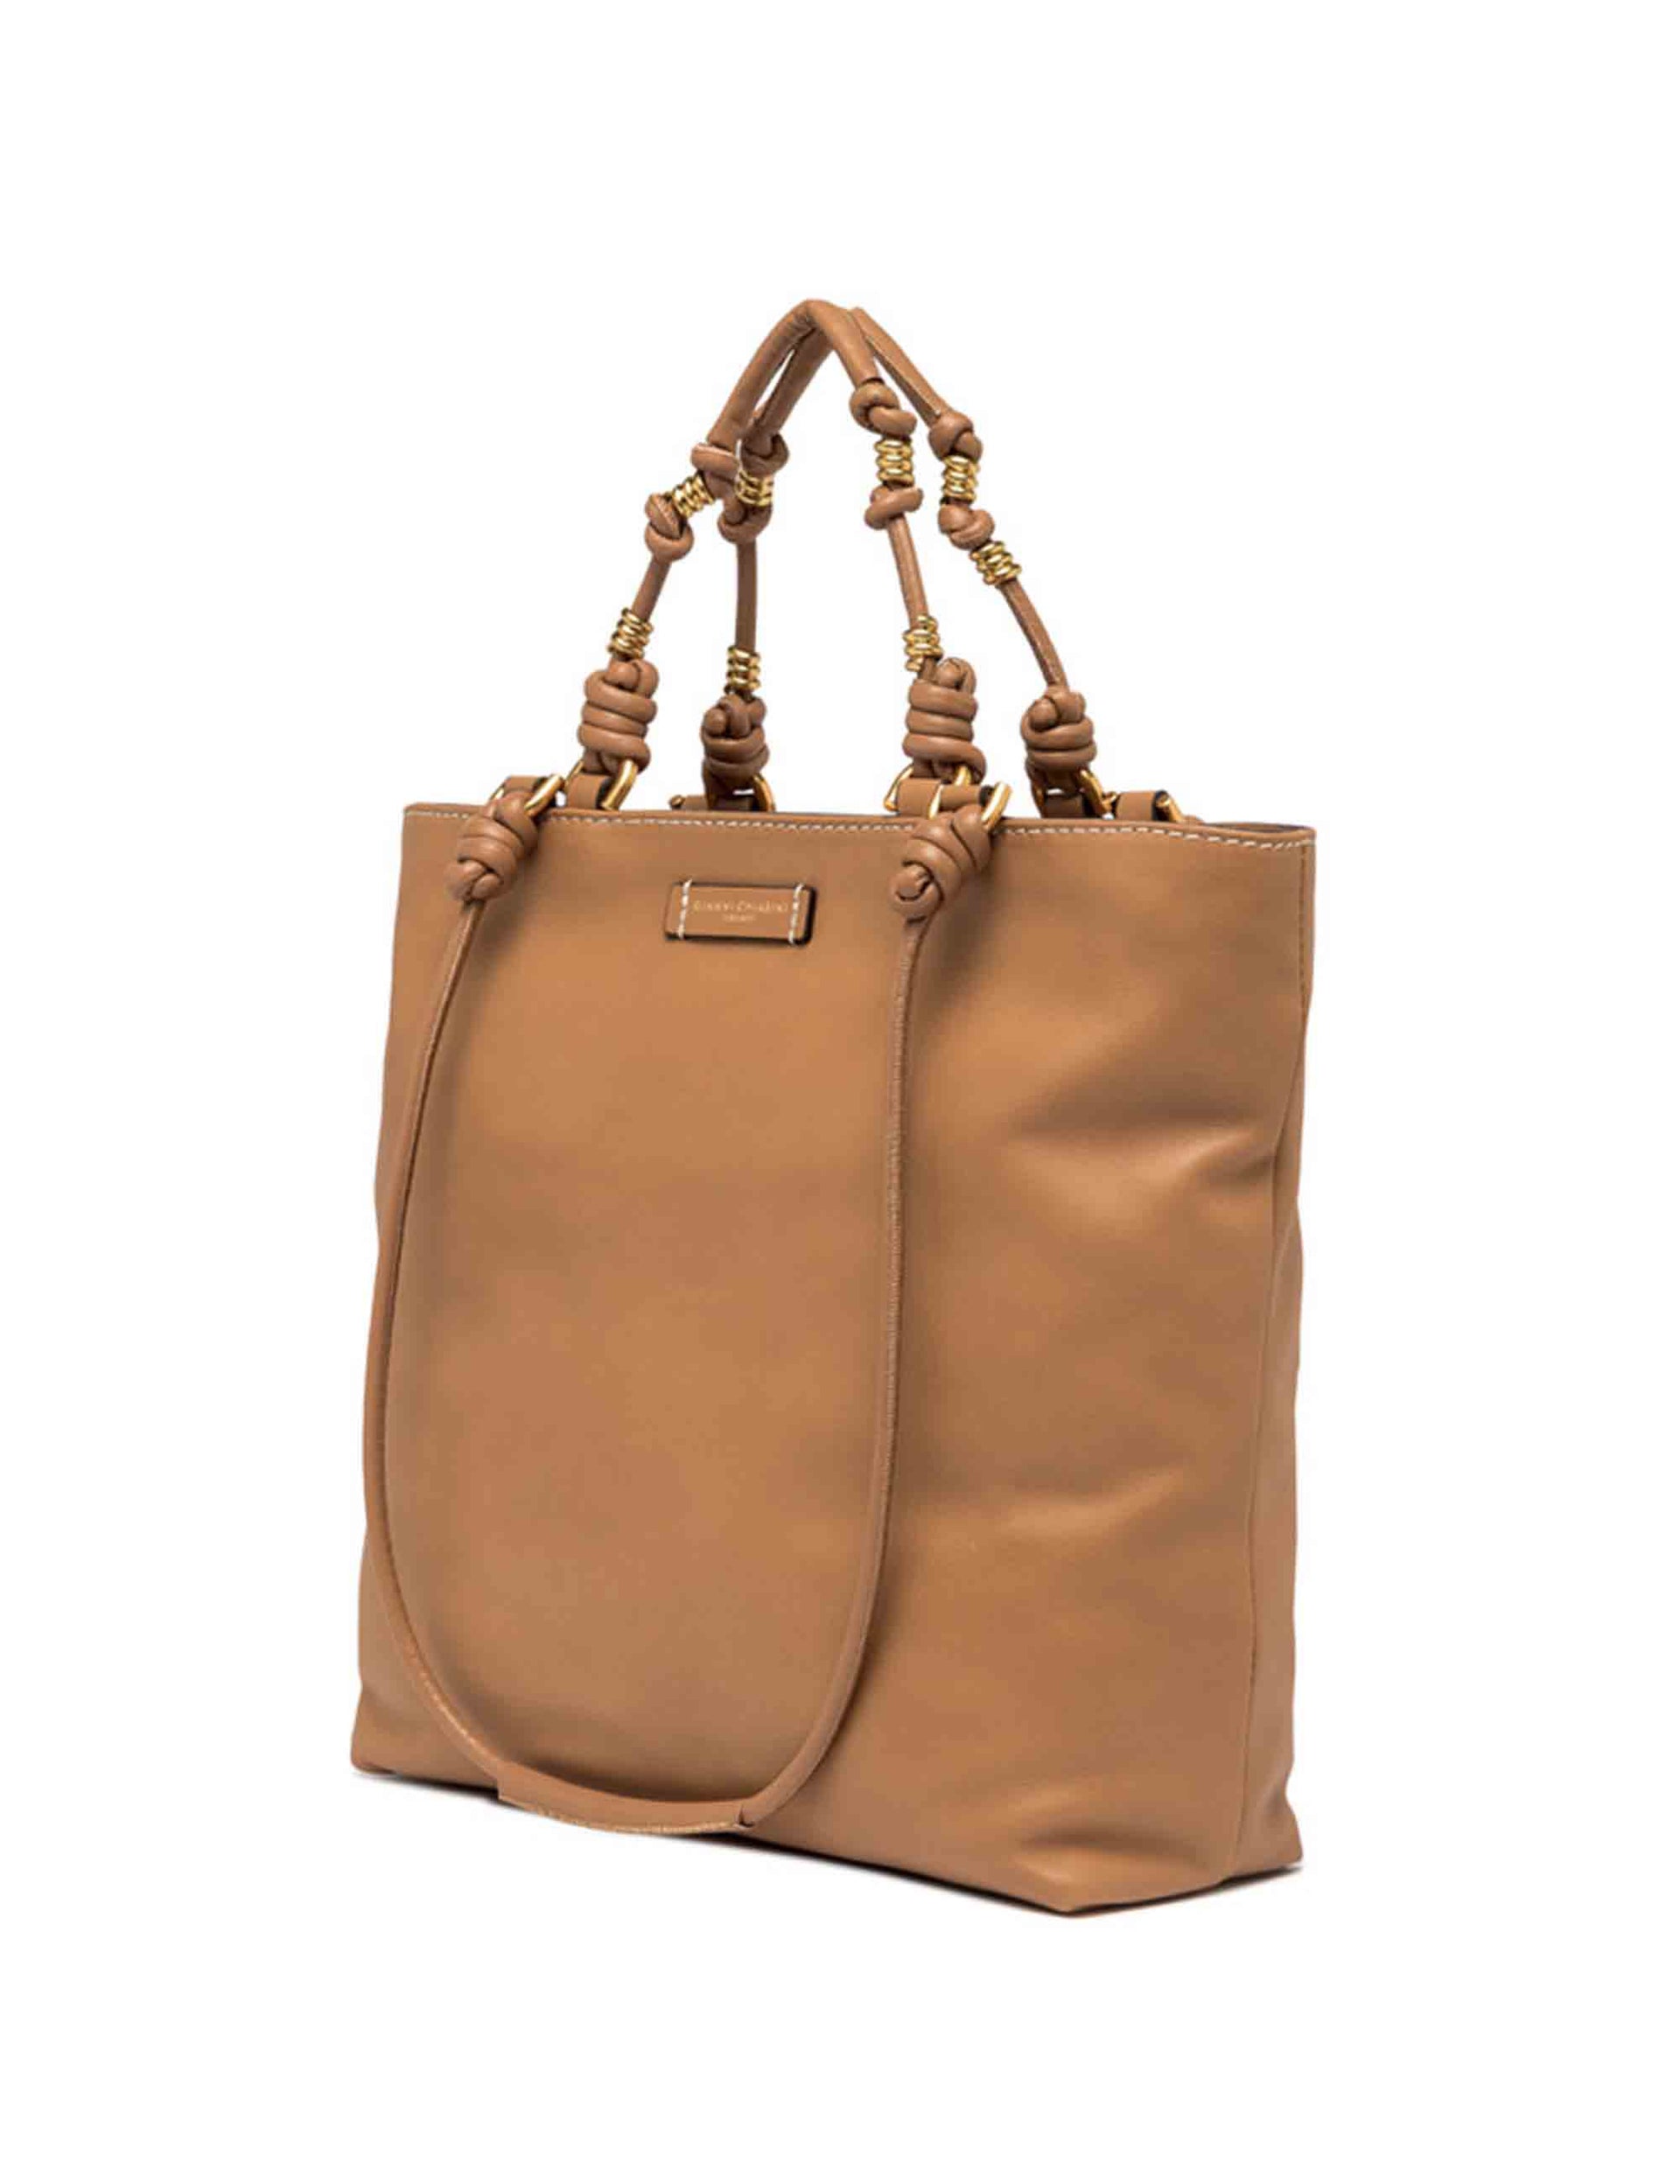 Shopping bag donna Camilla in pelle cuoio con doppi manici